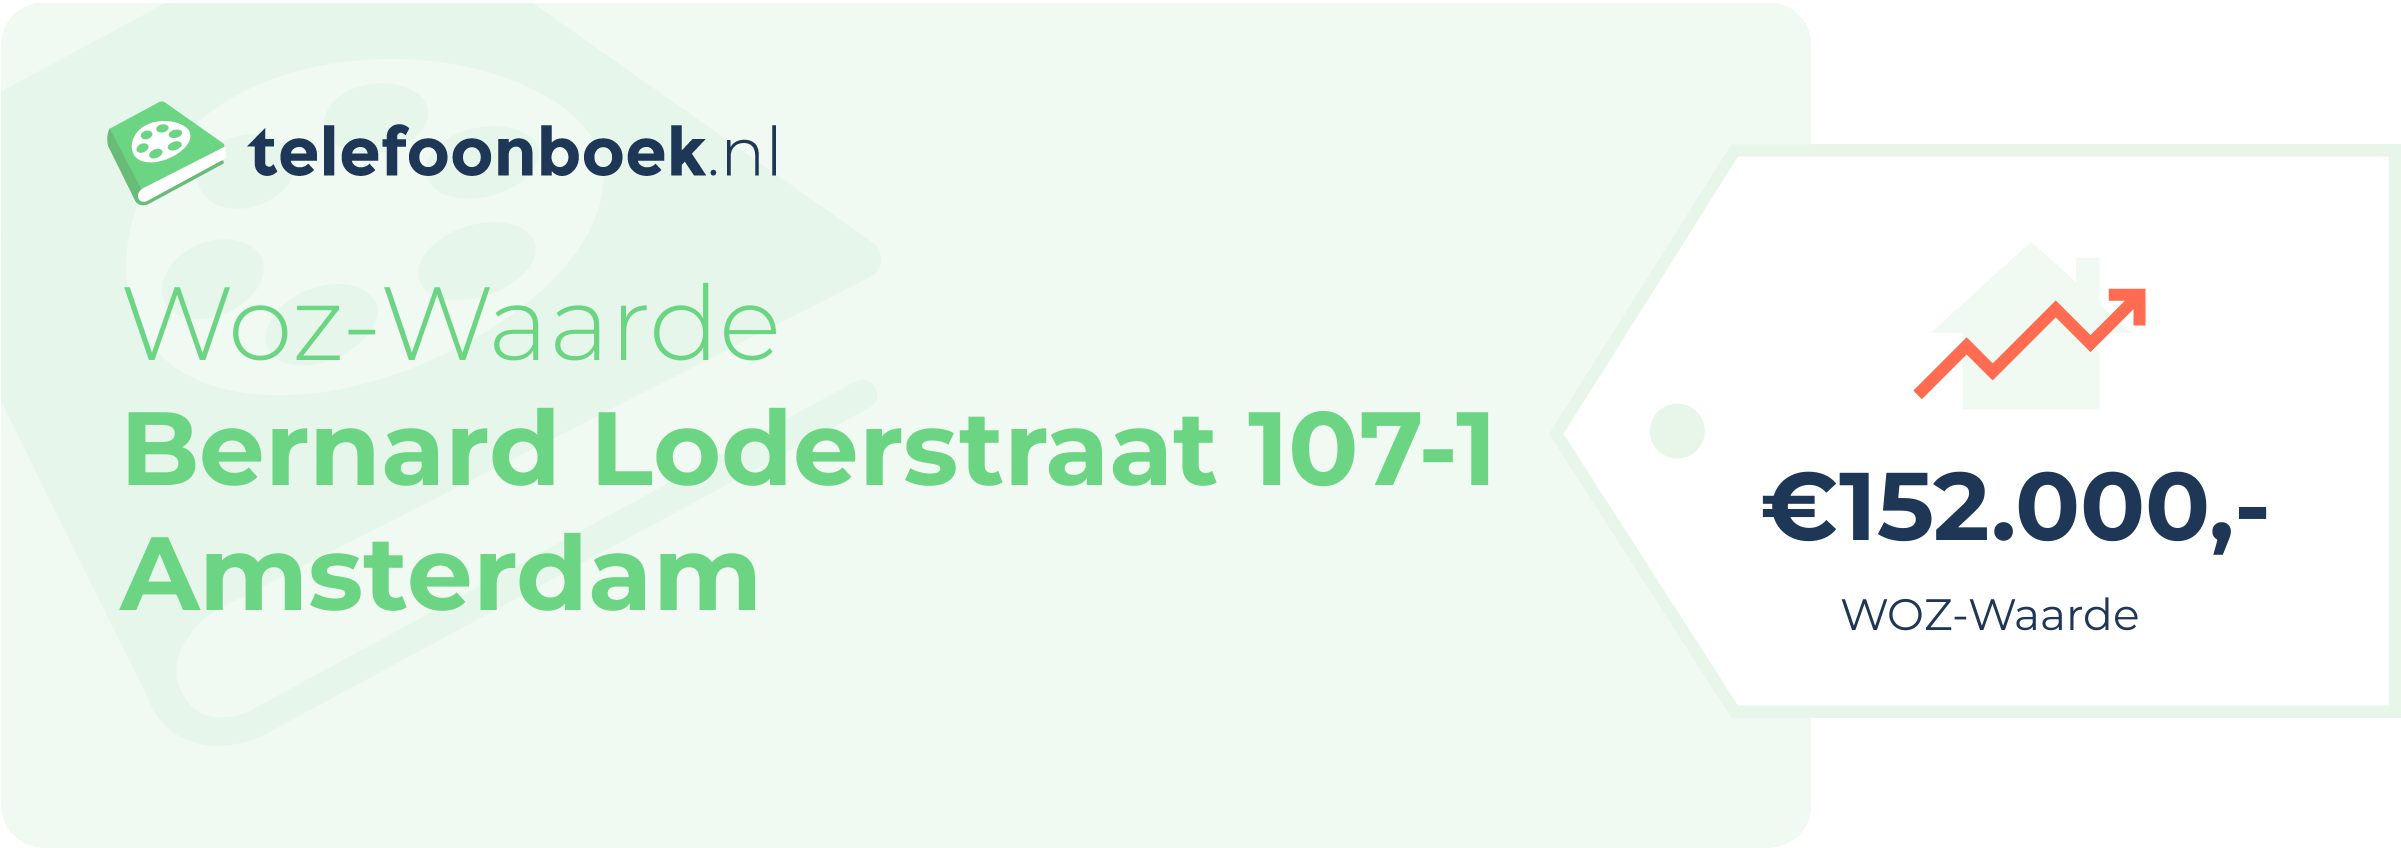 WOZ-waarde Bernard Loderstraat 107-1 Amsterdam